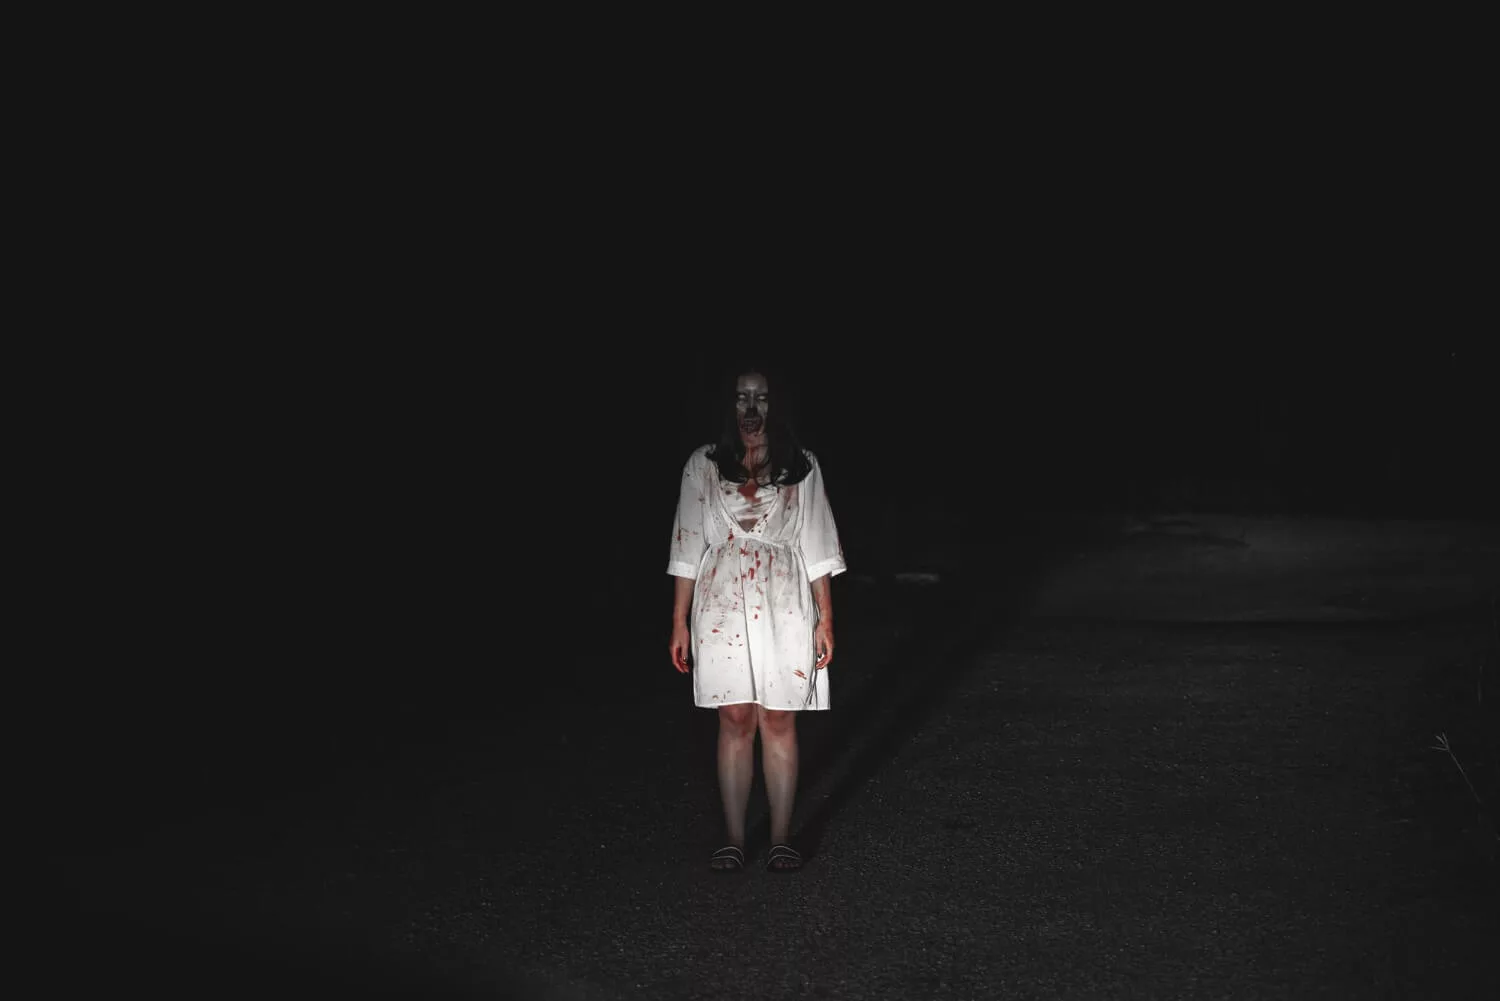 girl haunted on road